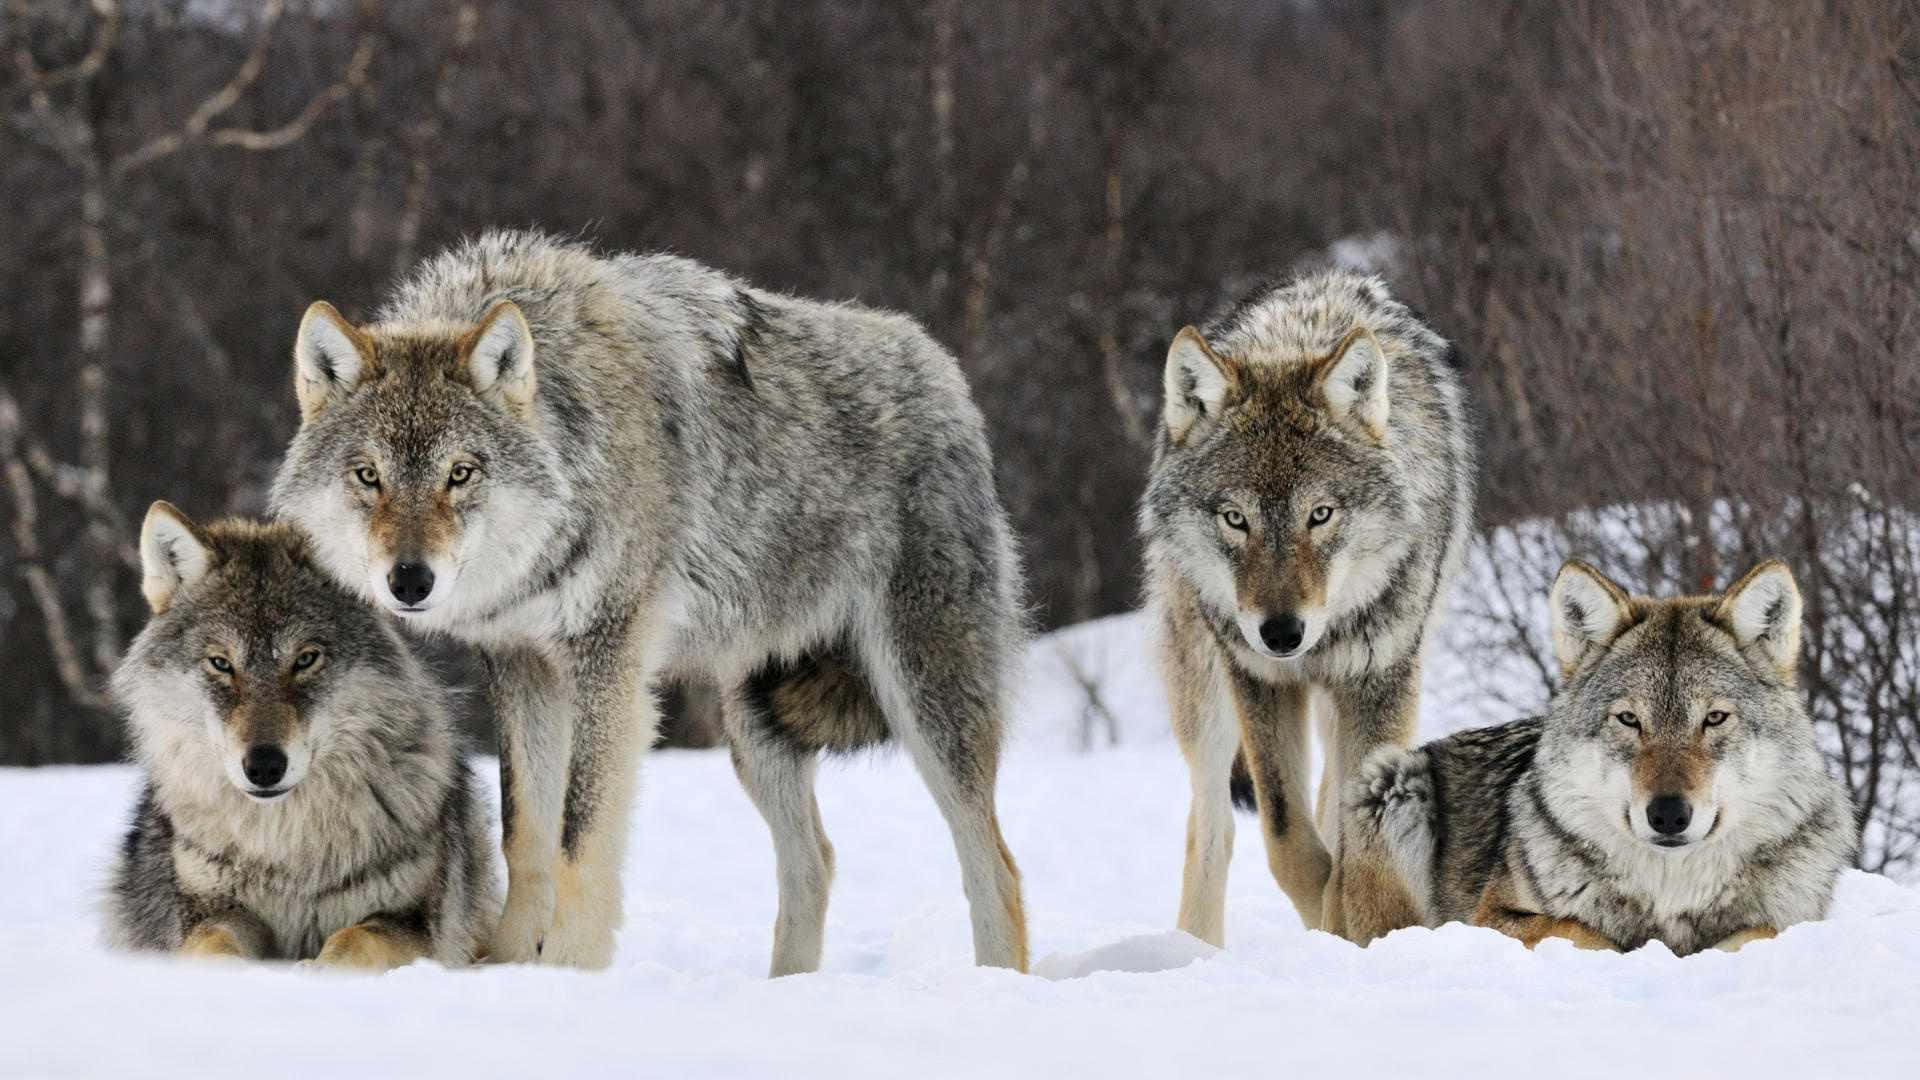 Eineschöne Wolfsfamilie In Ihrem Natürlichen Lebensraum. Wallpaper